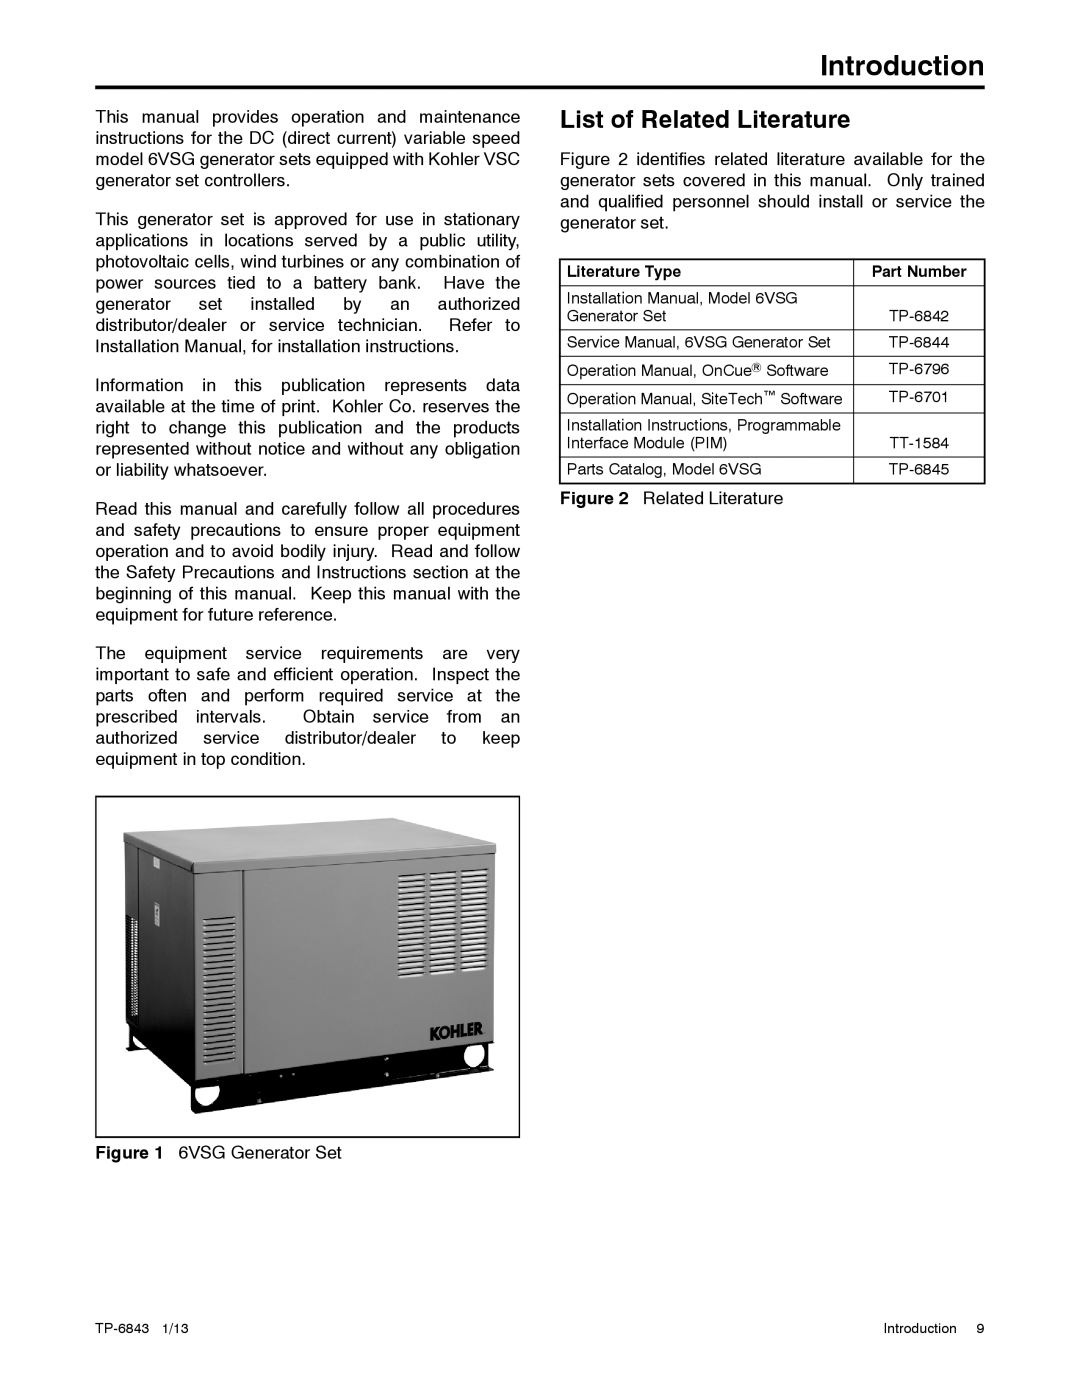 Kohler 24VDC, 6VSG, 36VDC, 48VDC manual Introduction, List of Related Literature 